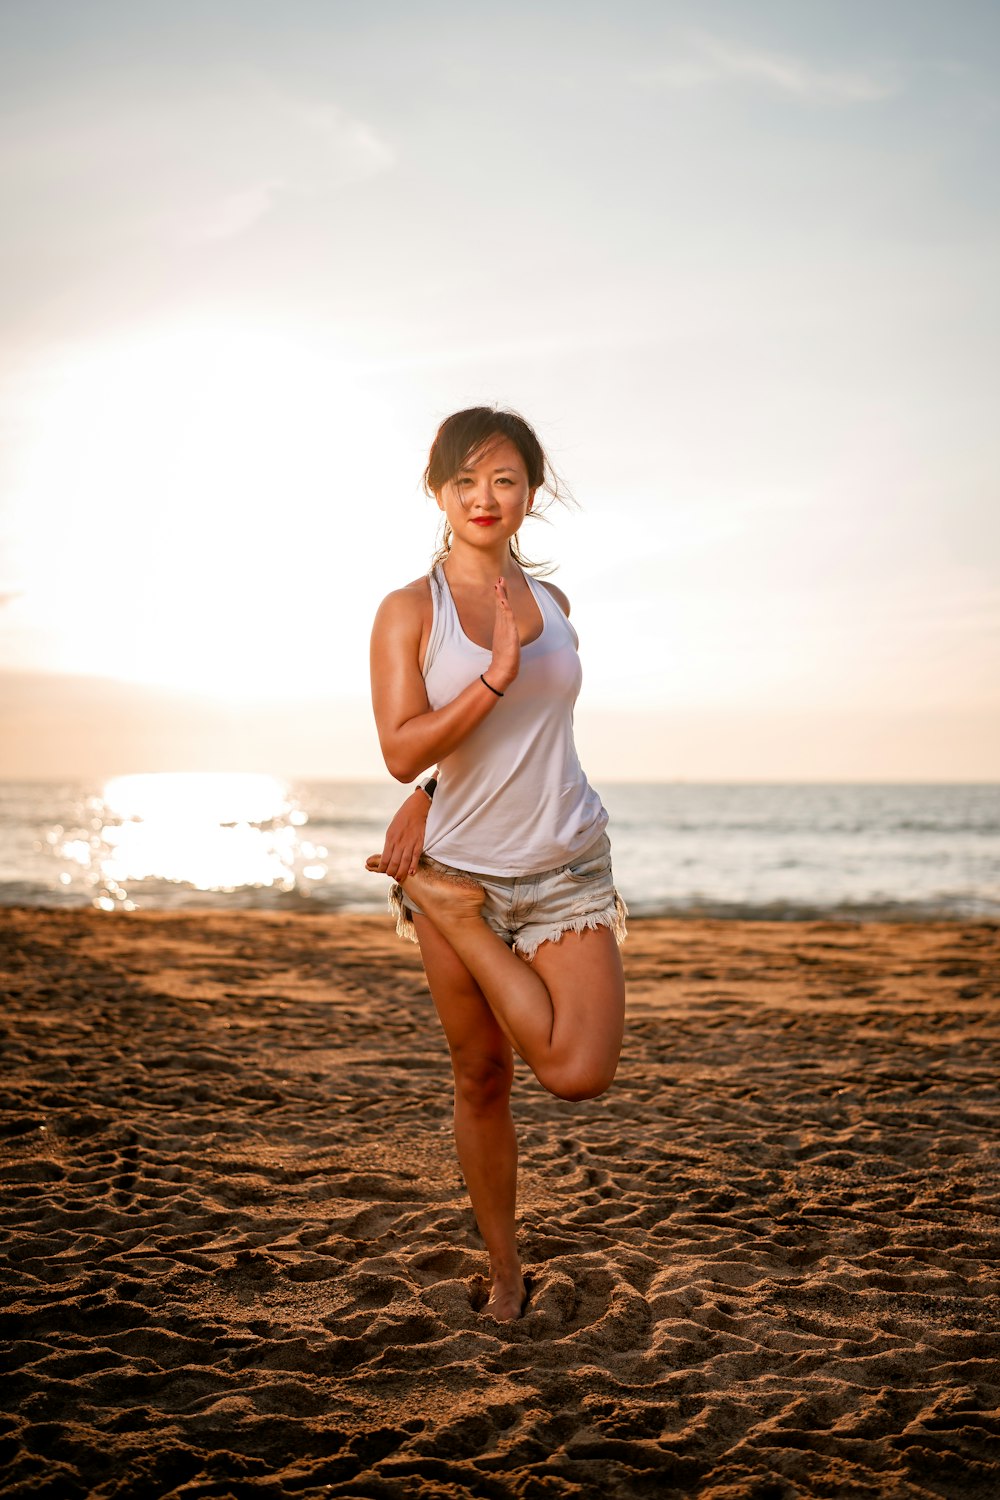 Une femme court sur la plage au coucher du soleil